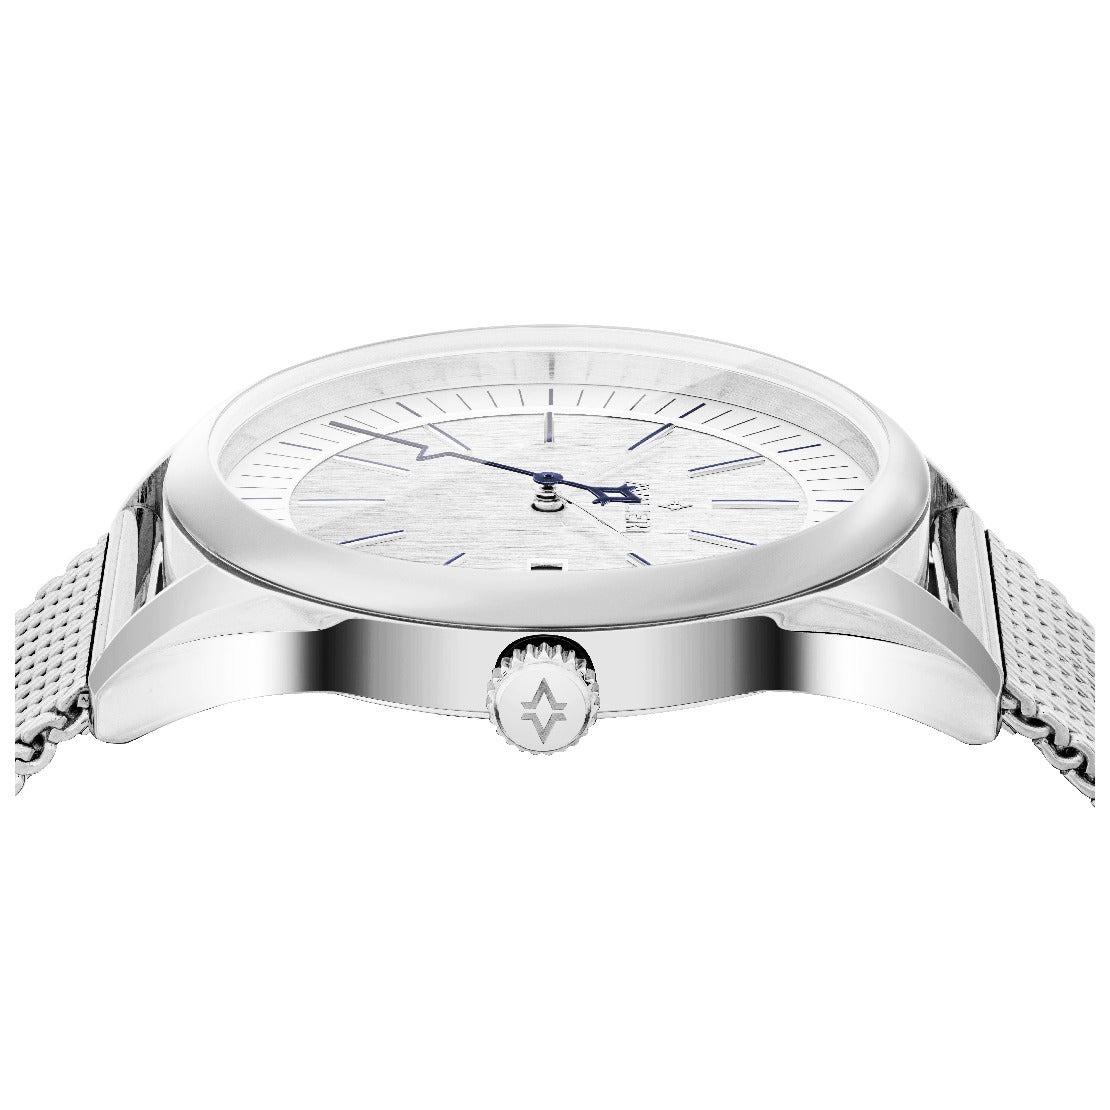 Avalieri Men's Quartz Watch, White Dial - AV-2533B